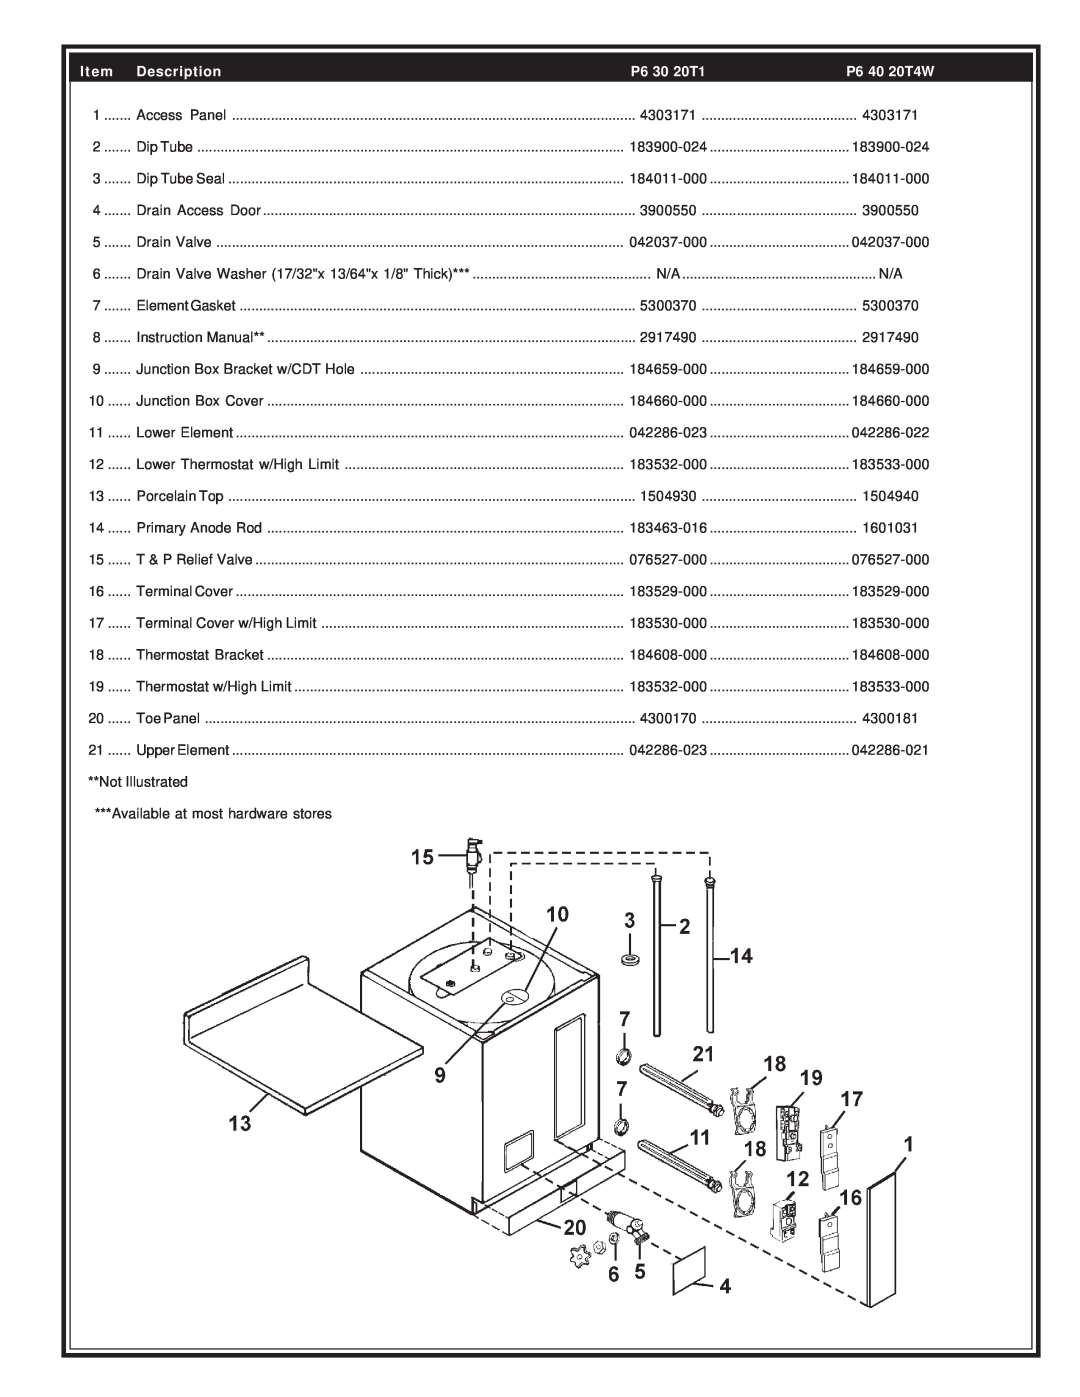 State Industries PR6 20 10MS manual P6 30 20T1, P6 40 20T4W, Description, Drain Valve, Lower Element, T & P Relief Valve 